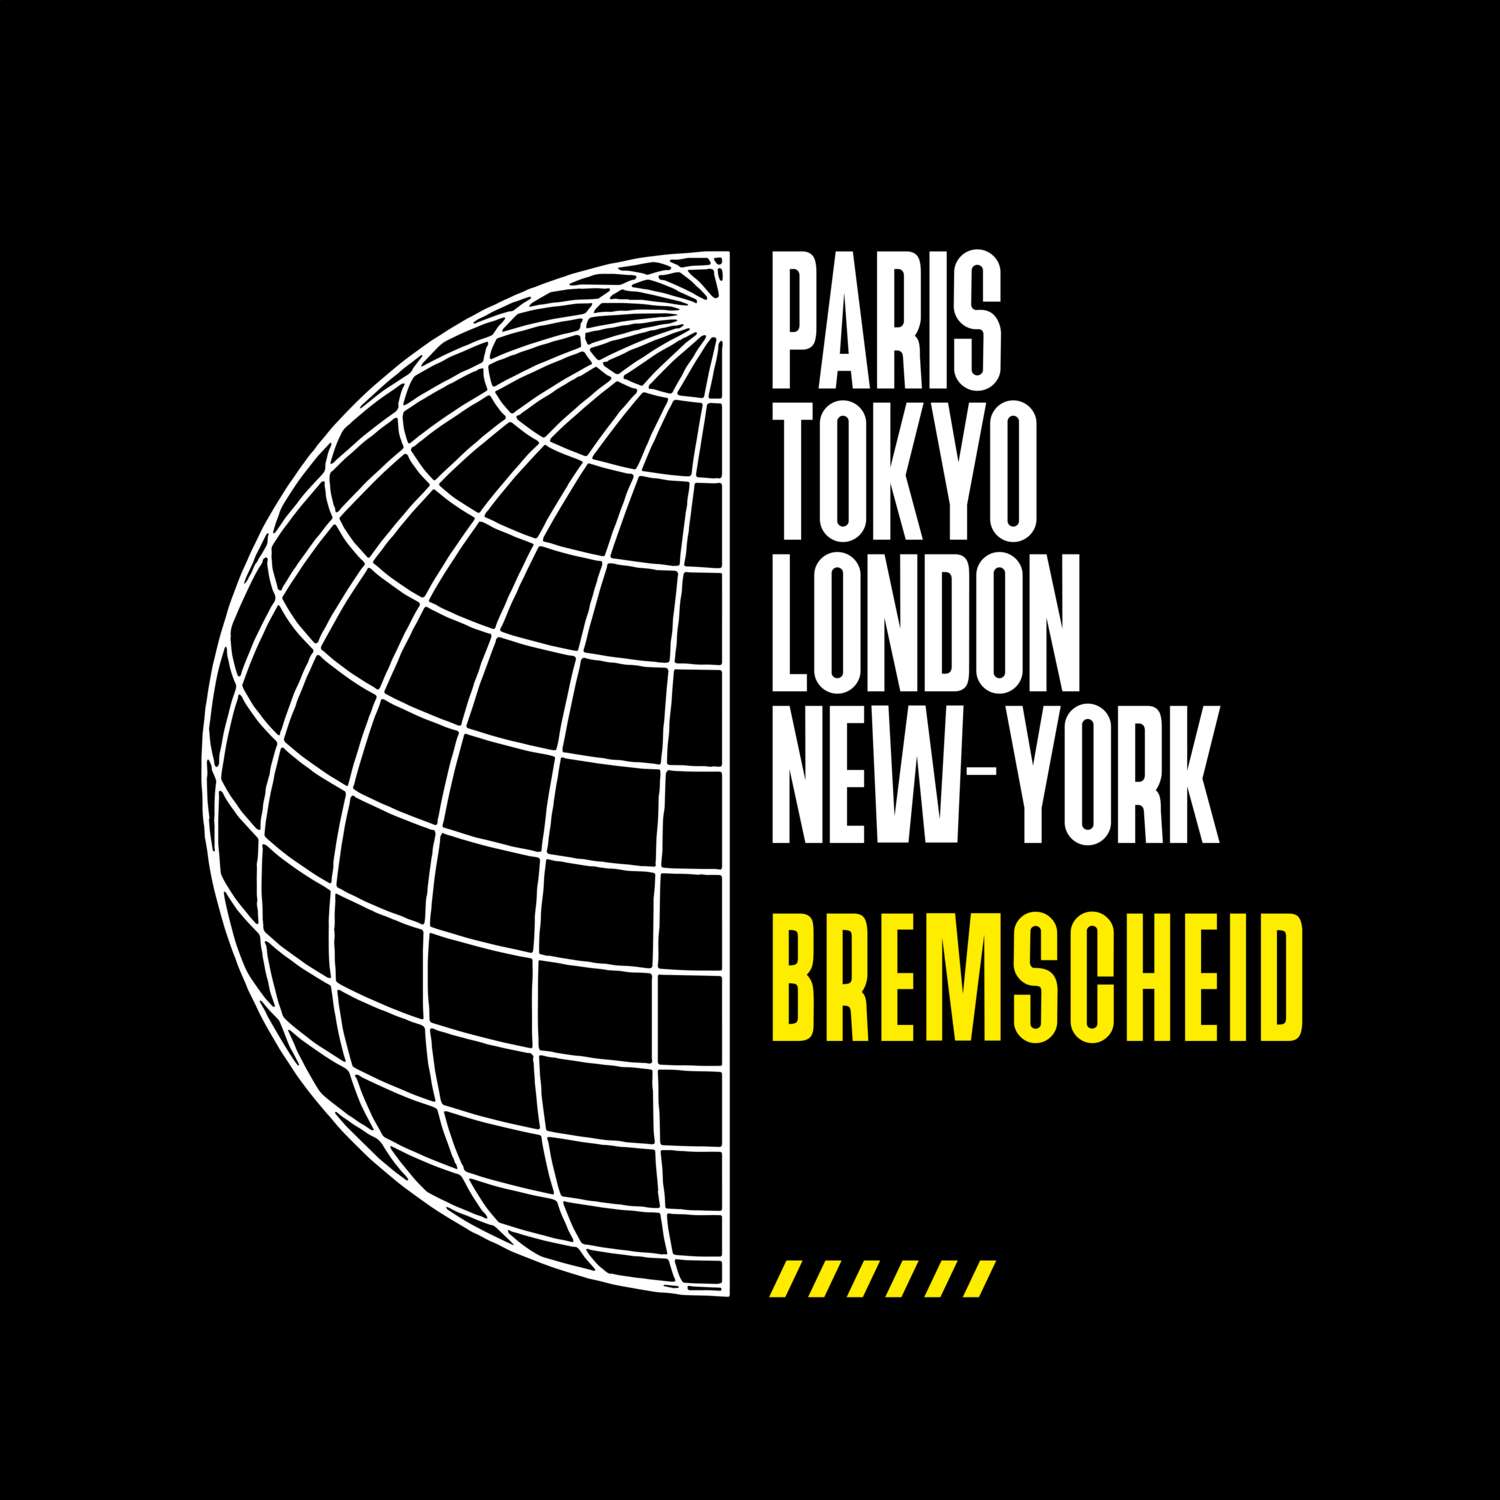 Bremscheid T-Shirt »Paris Tokyo London«